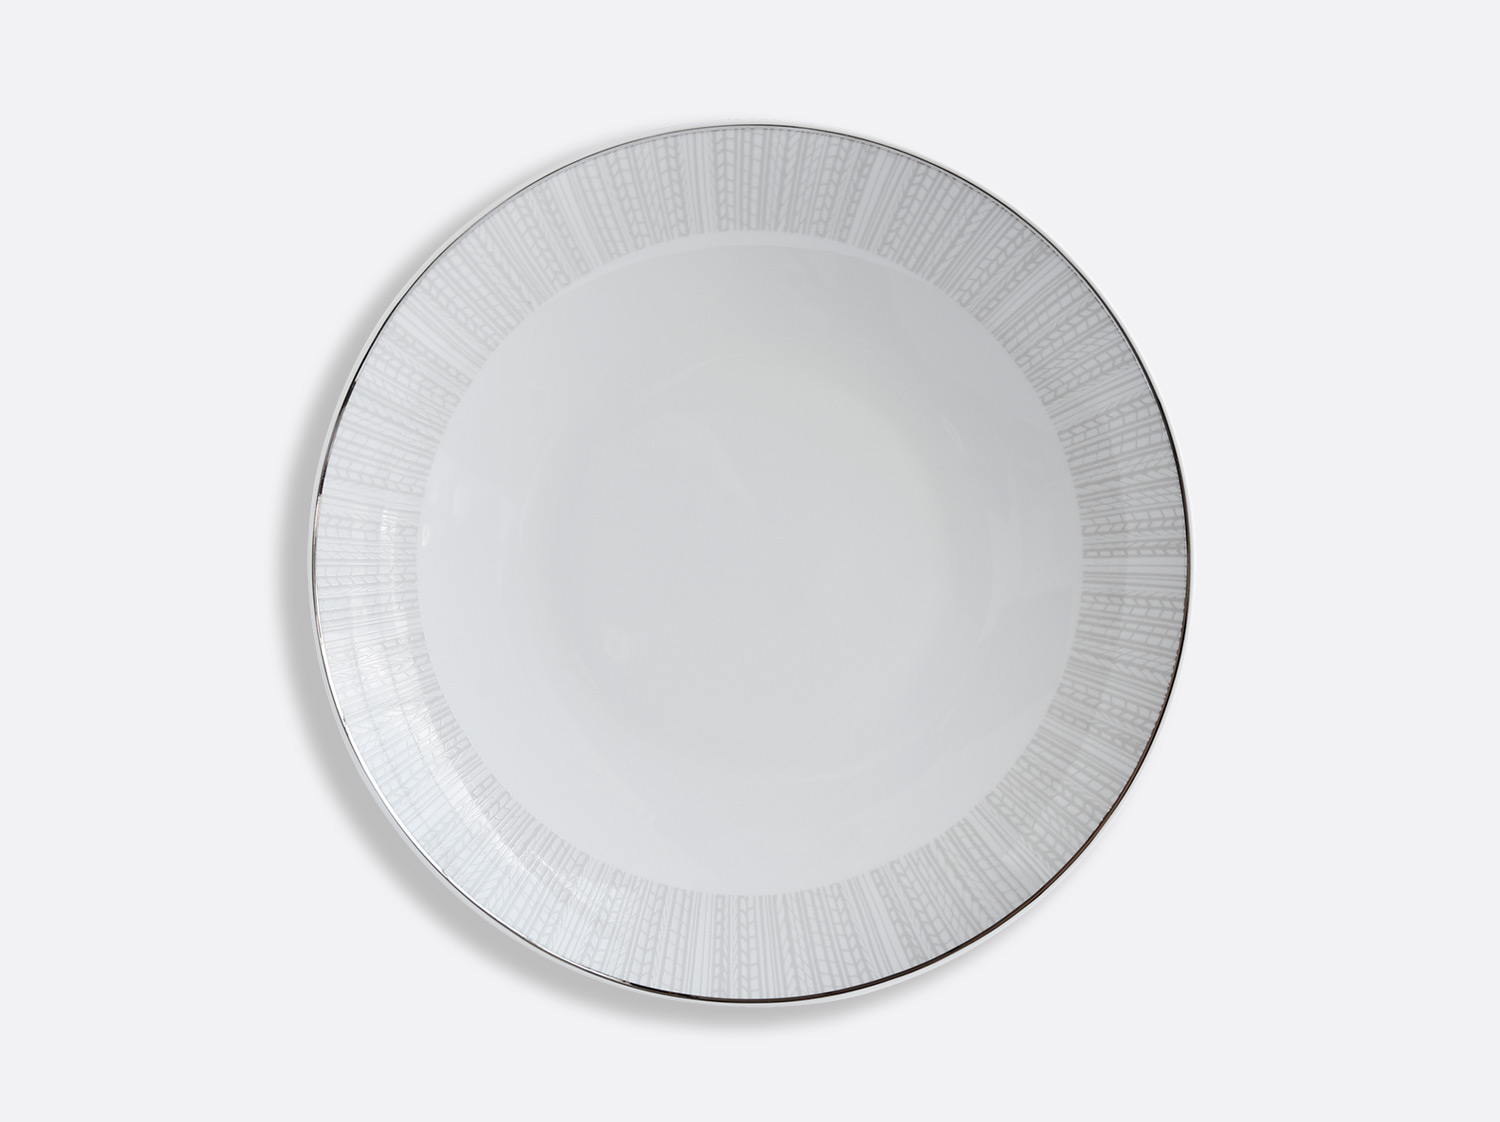 China Deep round dish 11.5'' of the collection Silva | Bernardaud